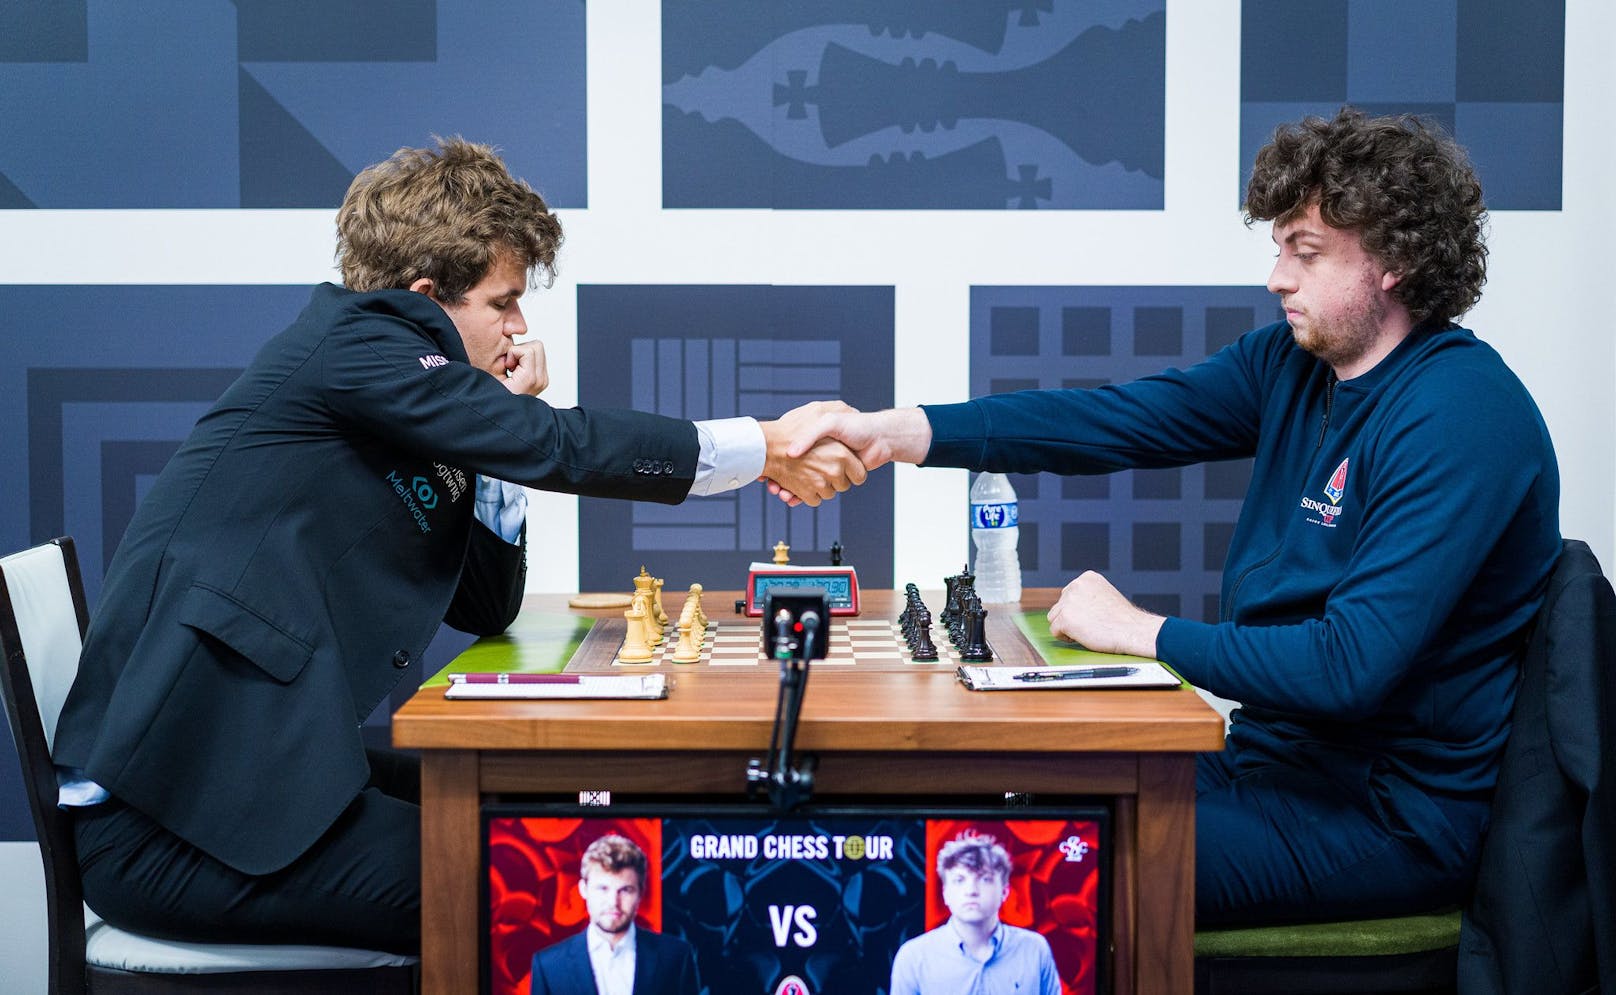 Ausgekugelt mit Liebeskugeln? Der 19-jährige Schach-Shootingstar Hans Niemann (rechts) sieht sich heftigen Vorwürfen ausgesetzt.